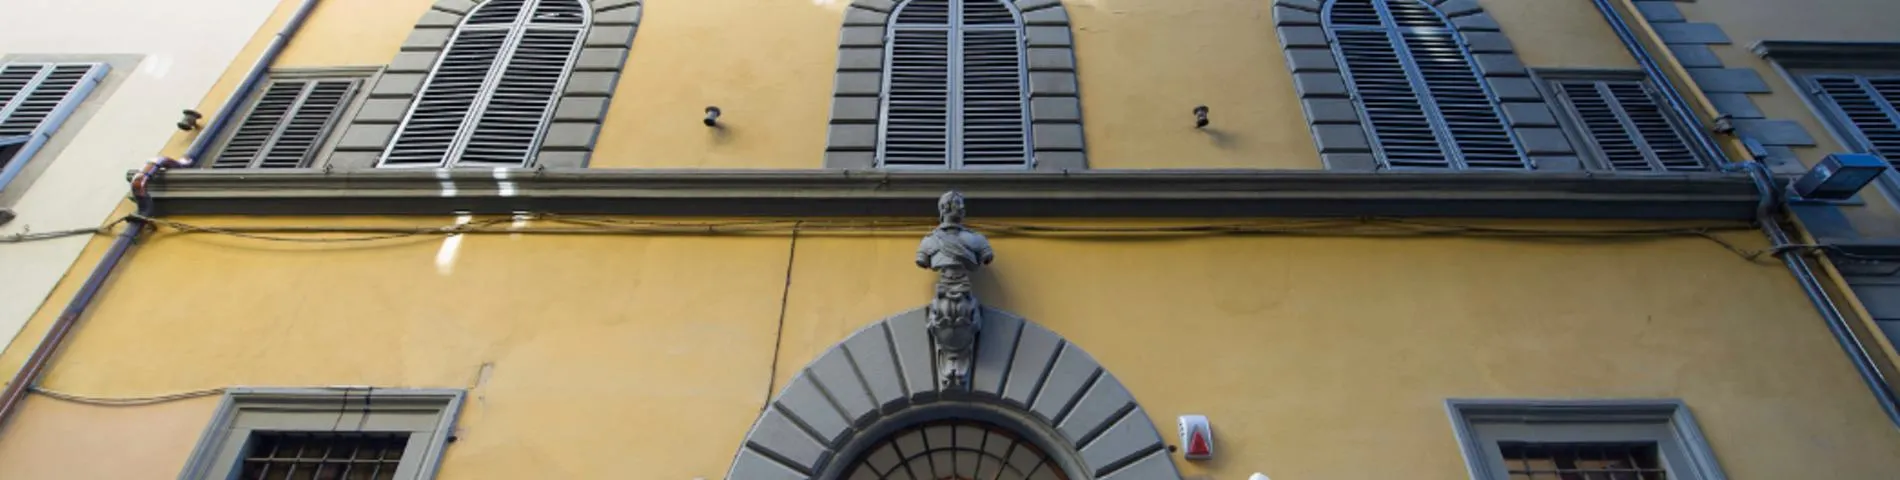 Scuola Lorenzo de Medici resim 1